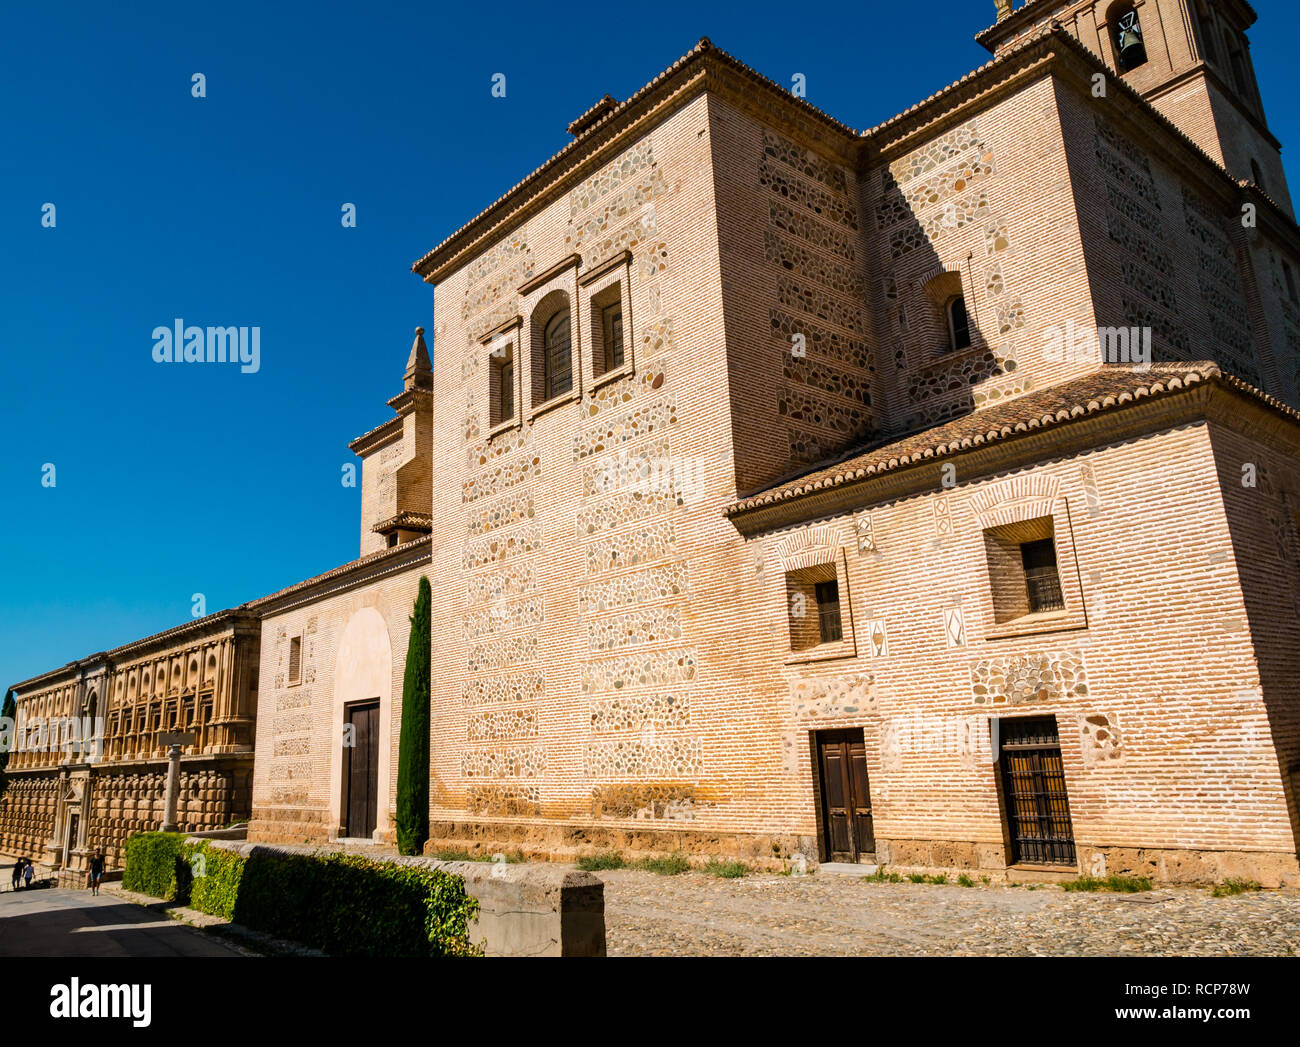 Palais de Charles Quint et l'église Santa Maria, Palais de l'Alhambra, Grenade, Andalousie, Espagne Banque D'Images